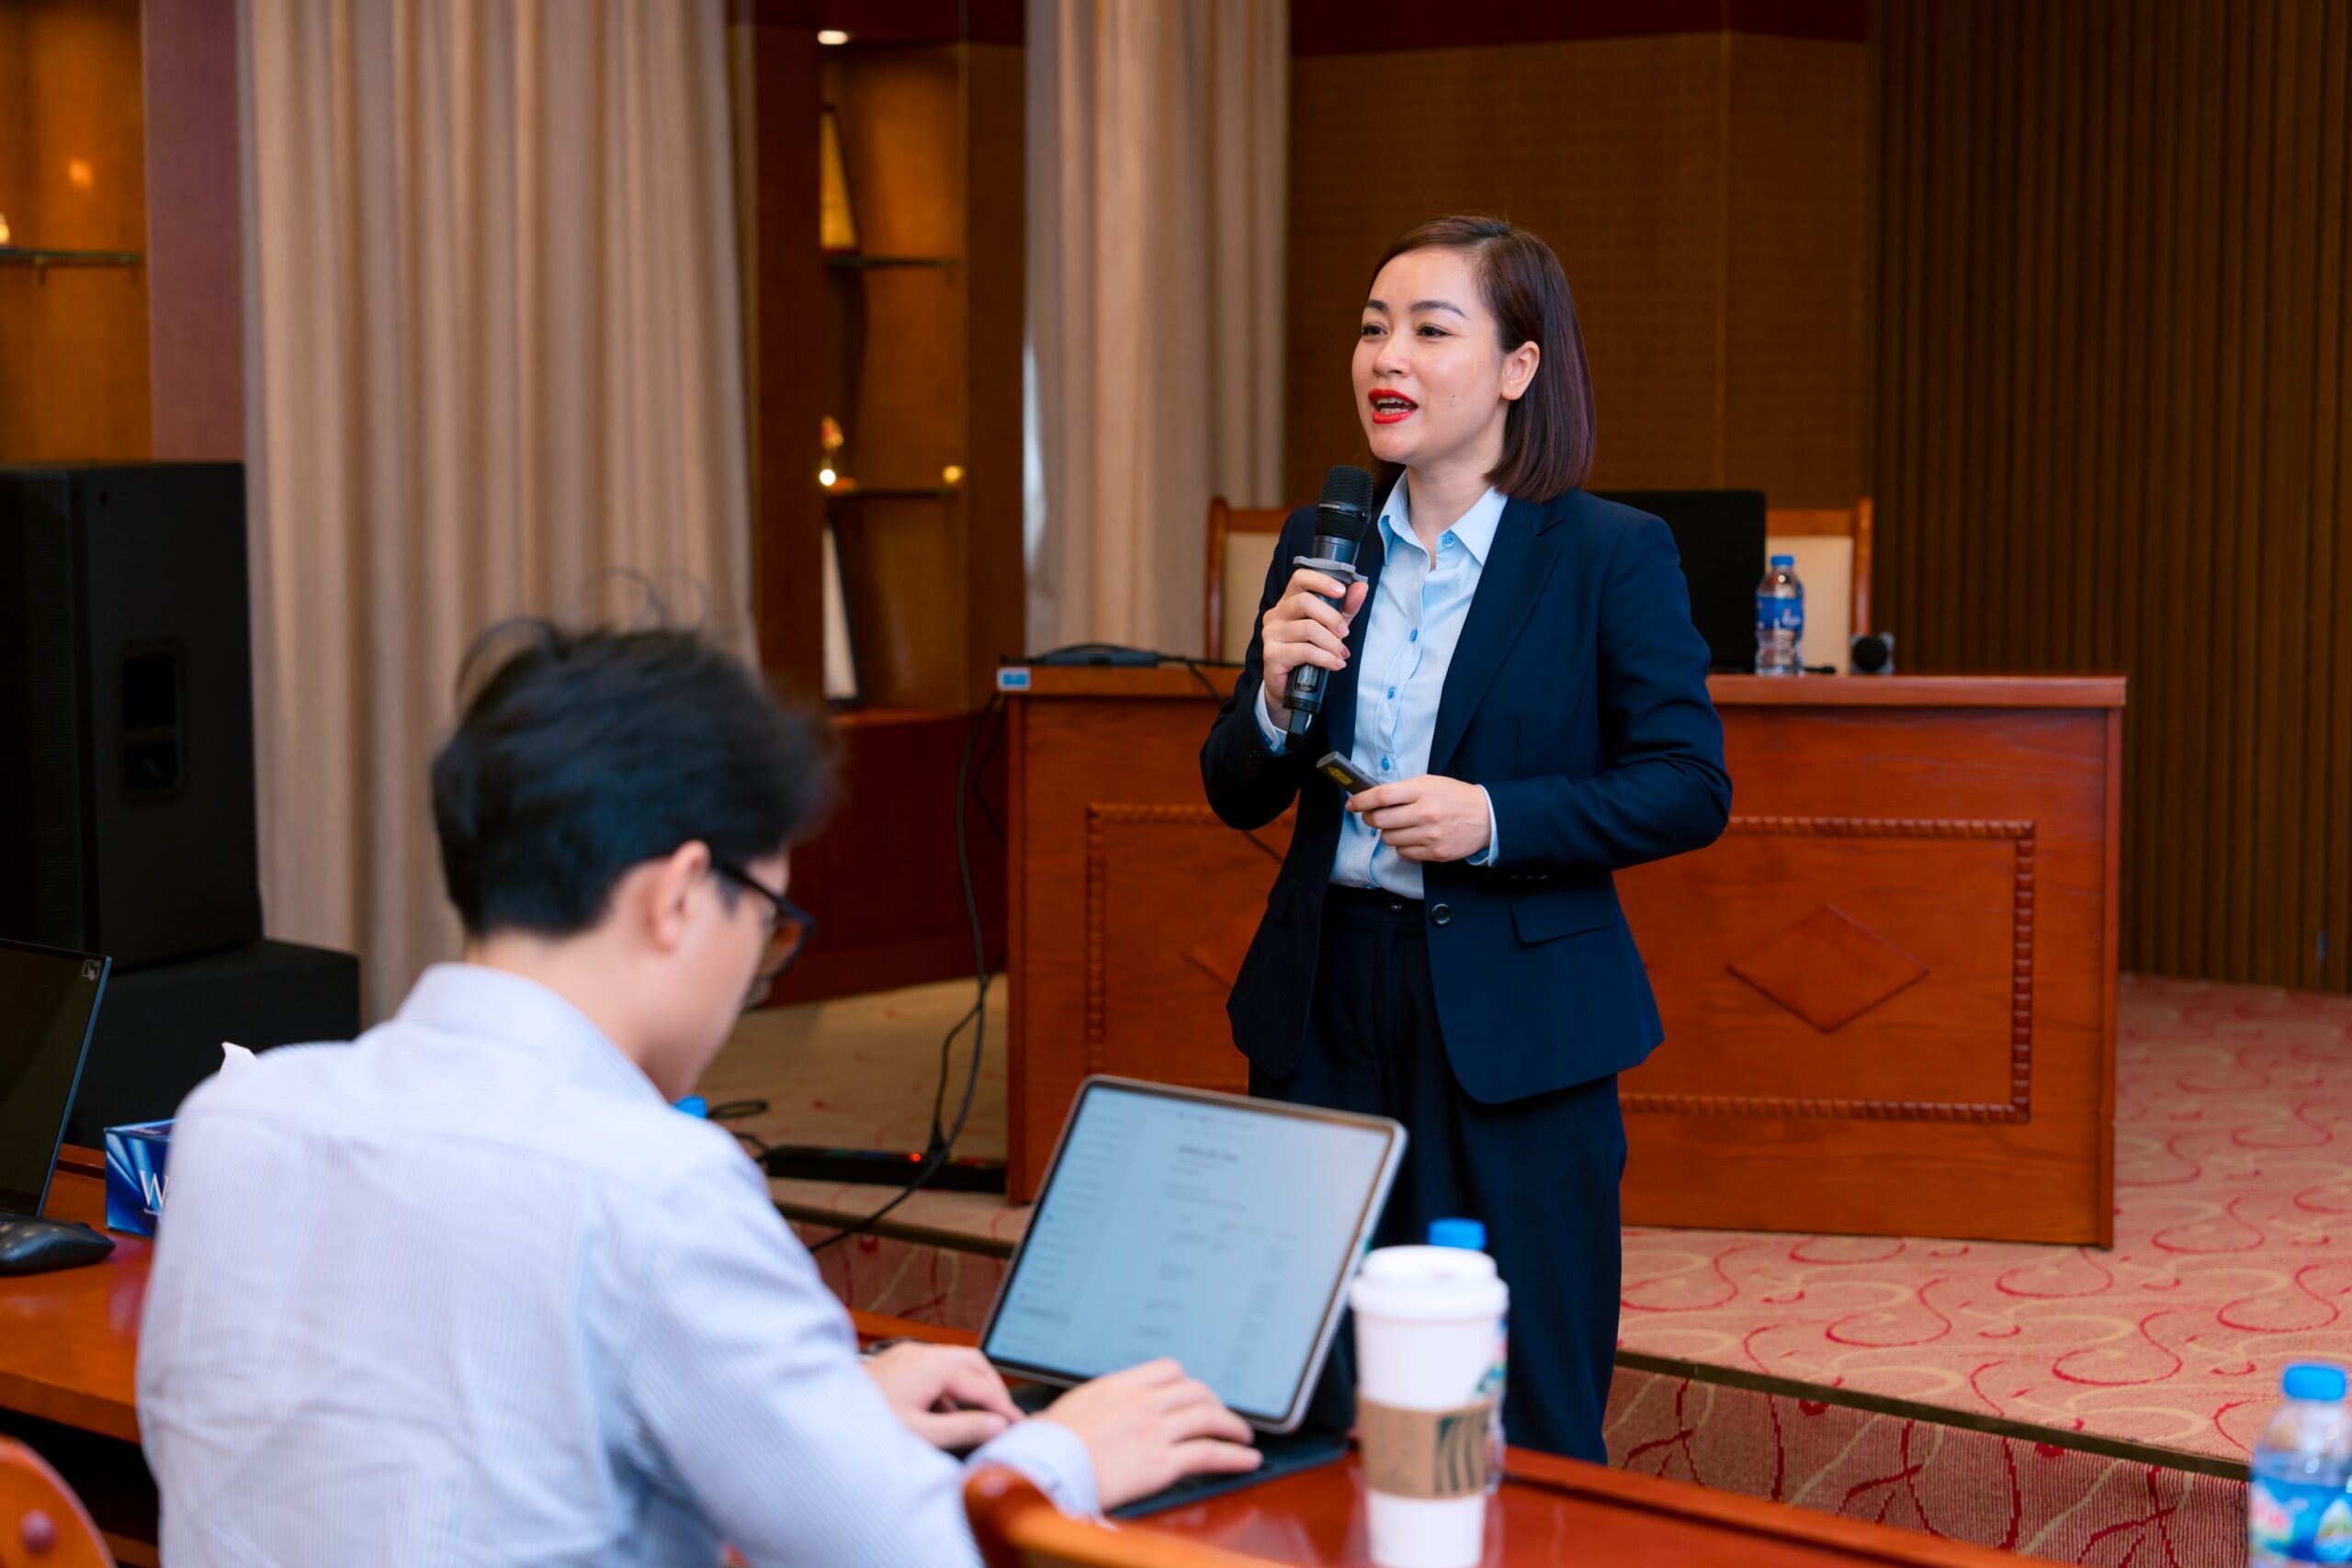 Chị Nguyễn Thị Minh Trang - Trưởng Ban Nhân Sự Tập Đoàn đã trực tiếp tổng kết các kết quả đạt được của Dự án, đại diện ấn nút Go-live hệ thống và đưa ra lộ trình khai thác hệ thống trong 2 năm tiếp theo 2024-2025